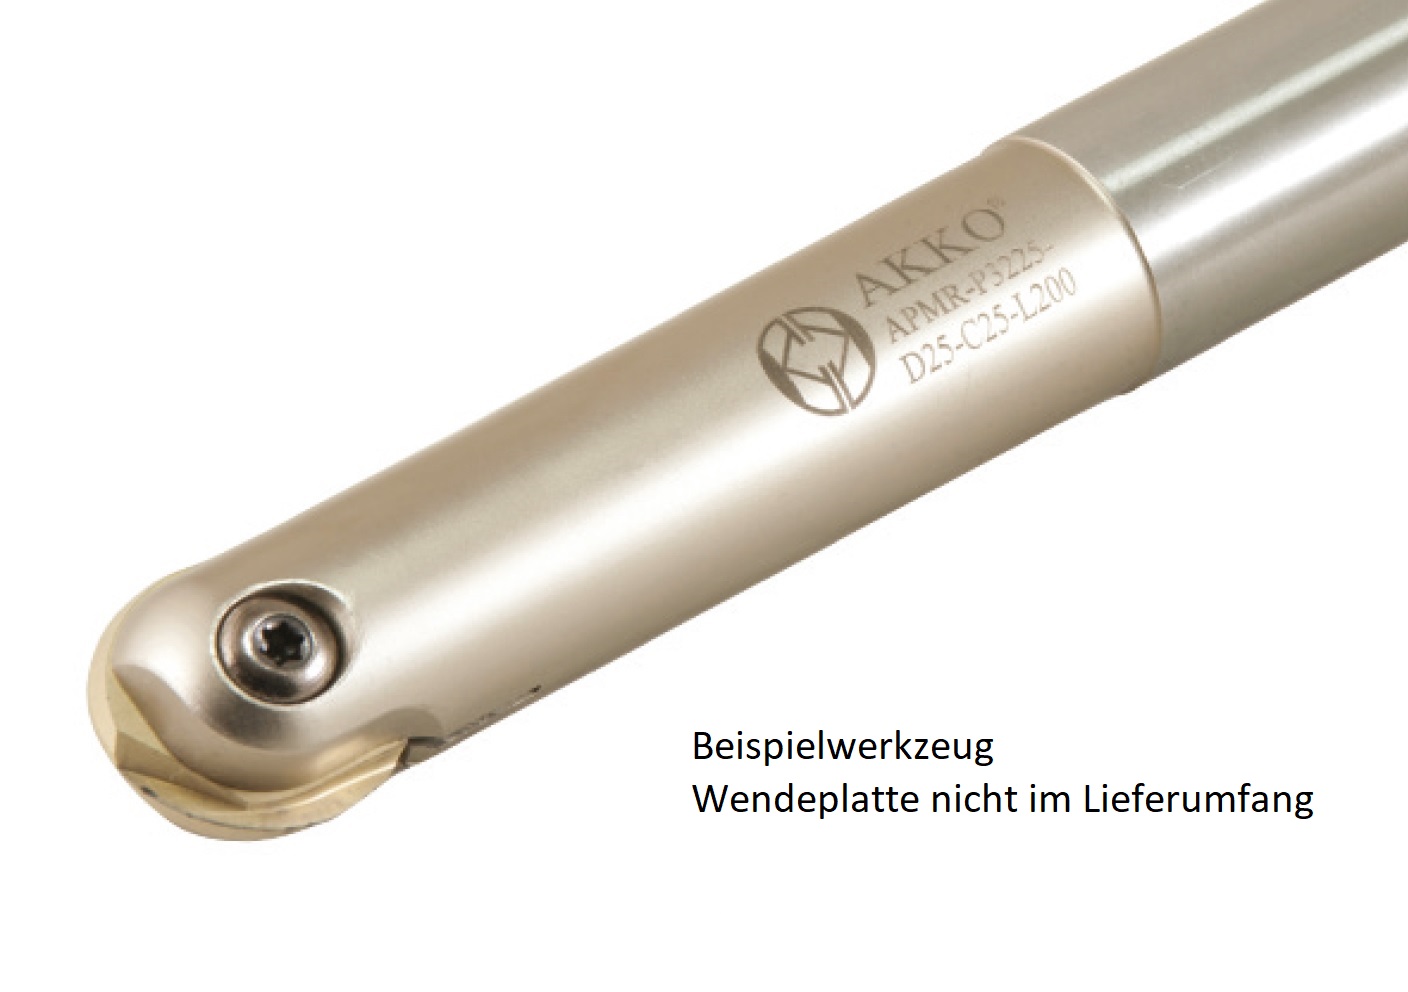 AKKO-Kugelkopierfräser für Wendeplatten, ø 12 mm, kompatibel mit Walter P3212 und LMT/Kieninger WPR 12
Schaft-ø 12, ohne Innenkühlung